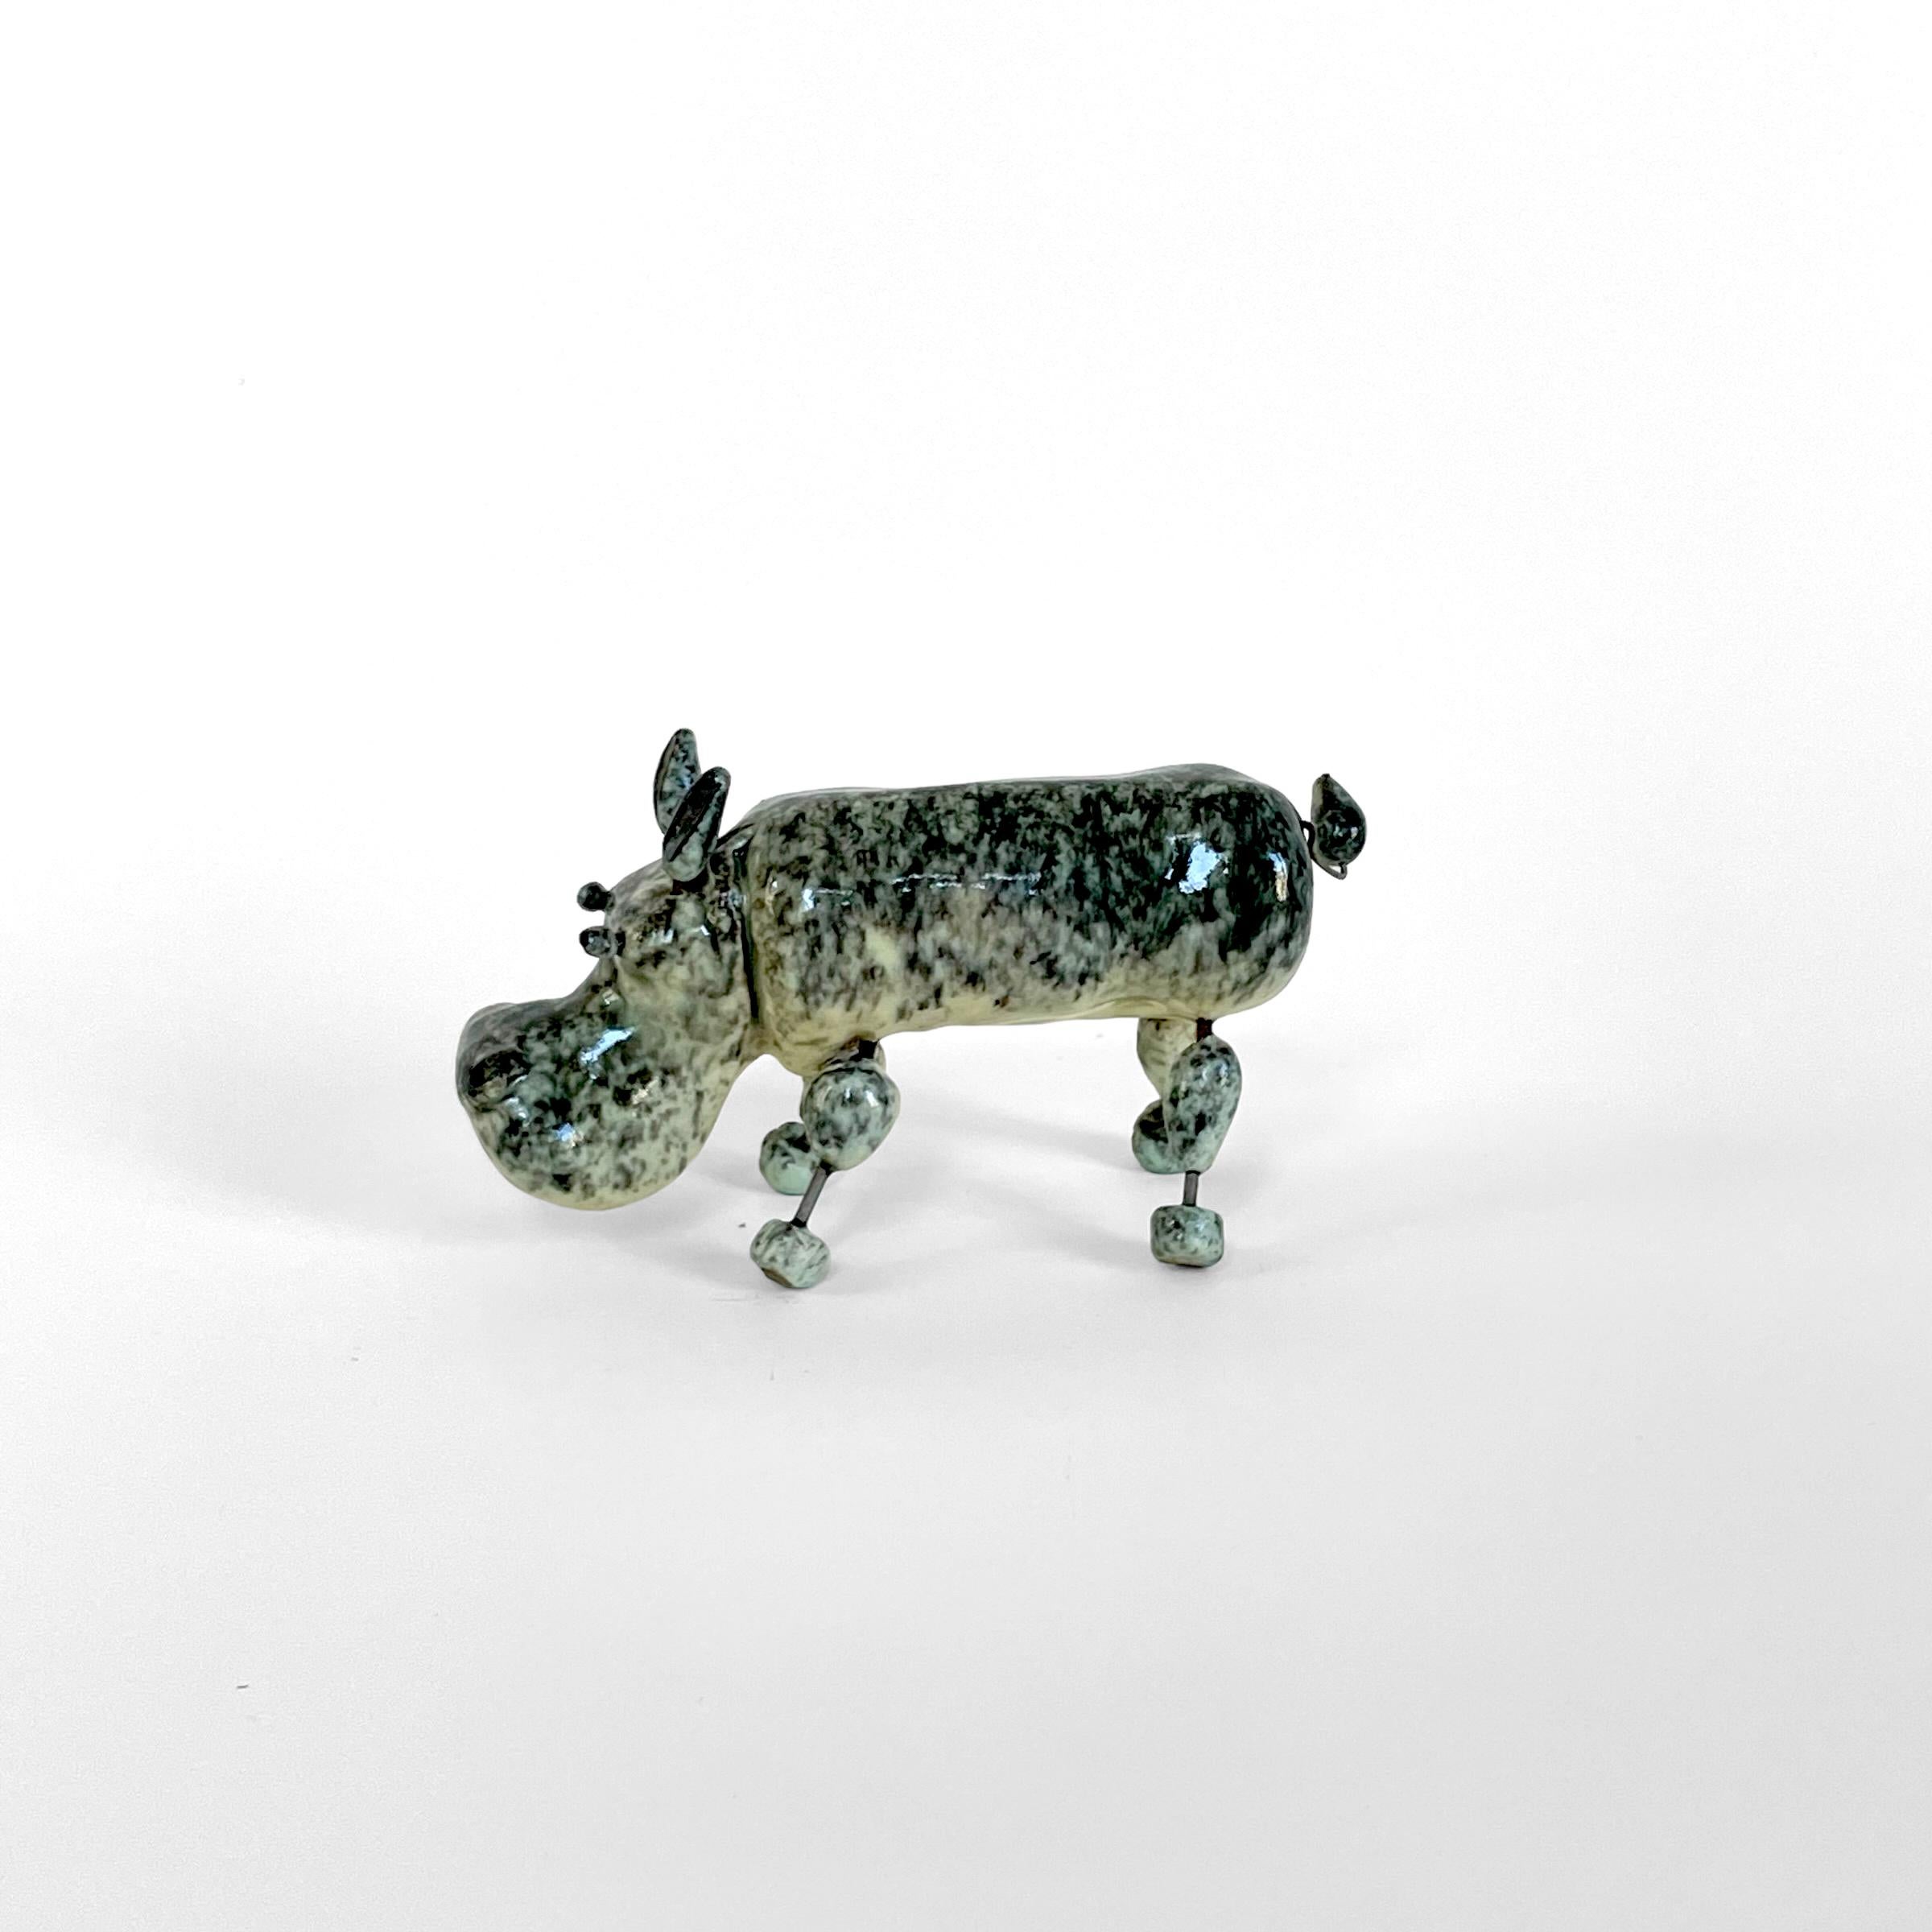 Rare hippopotame en céramique des potiers d'Accolay, 1960 France.
Très bon état, rien à signaler.

Il existe toute une série d'animaux amusants fabriqués par les potiers d'Accolay à cette époque, en céramique et en fil de fer.

Dimensions : Longueur